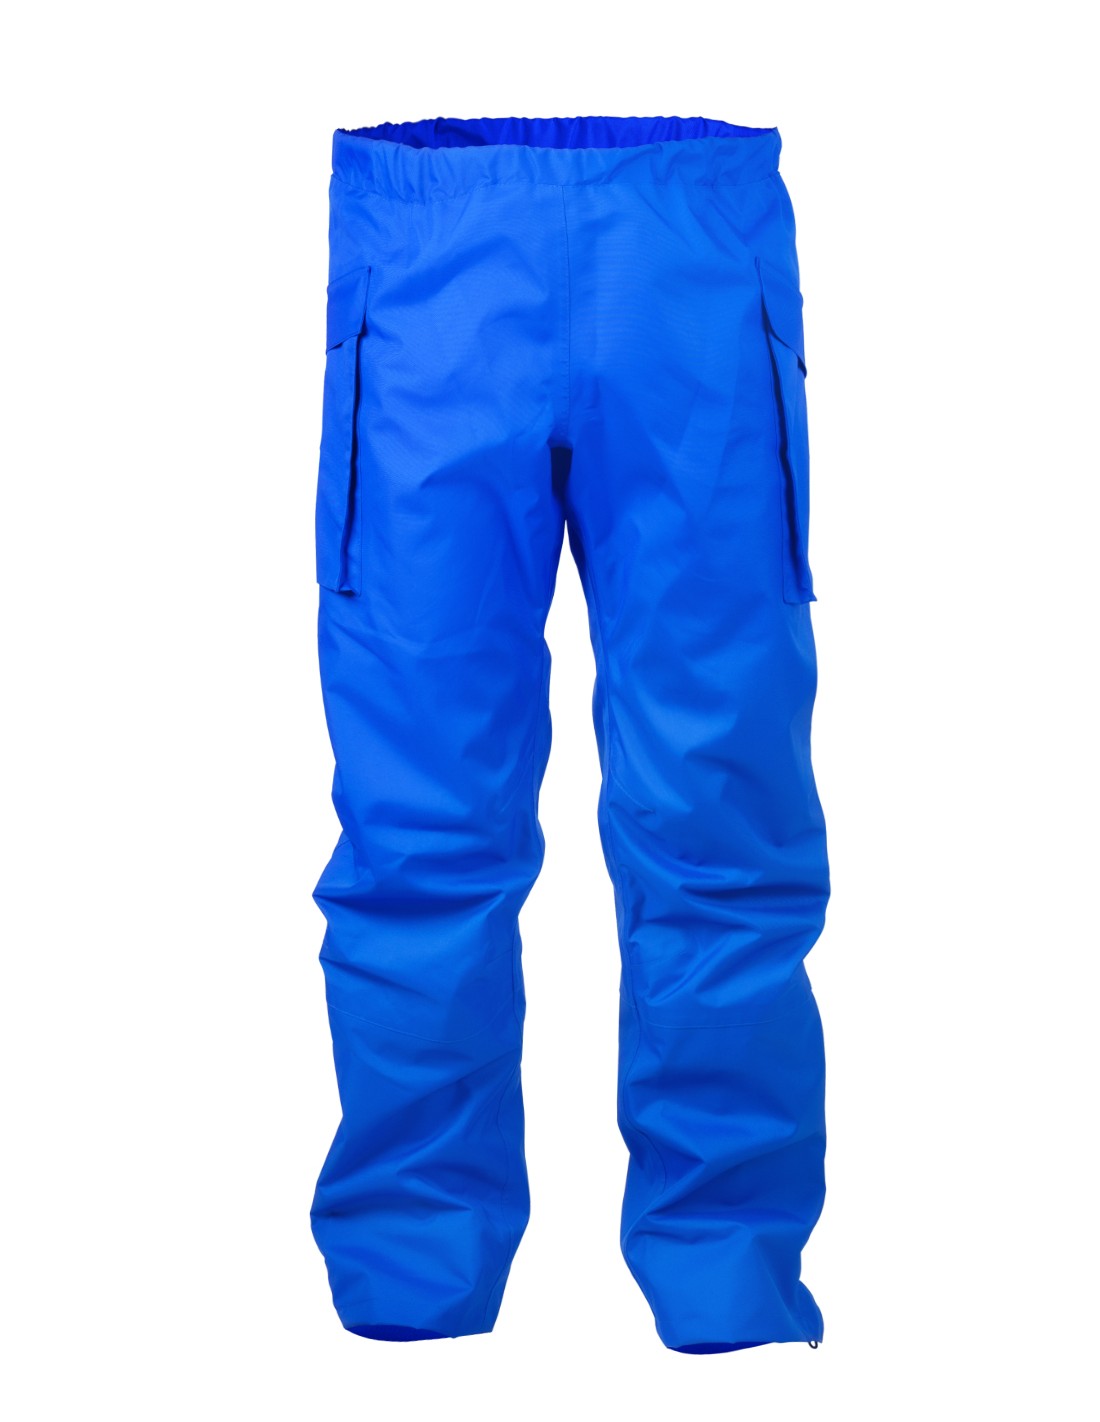 Waterproof Lightweight Trousers - PROS